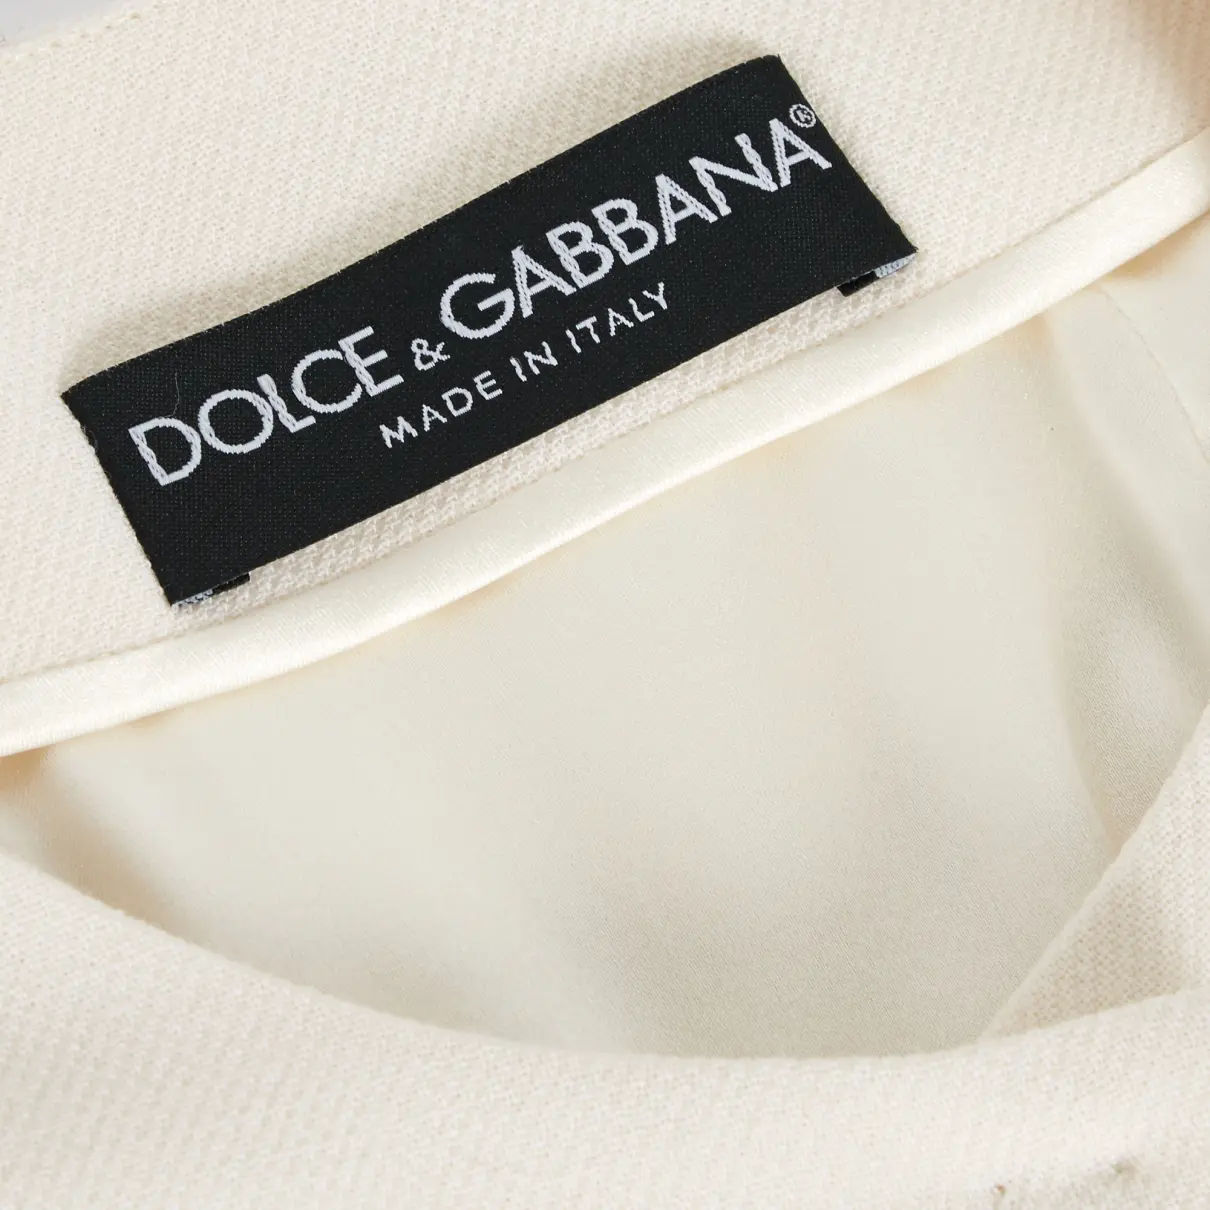 Wool coat Dolce & Gabbana